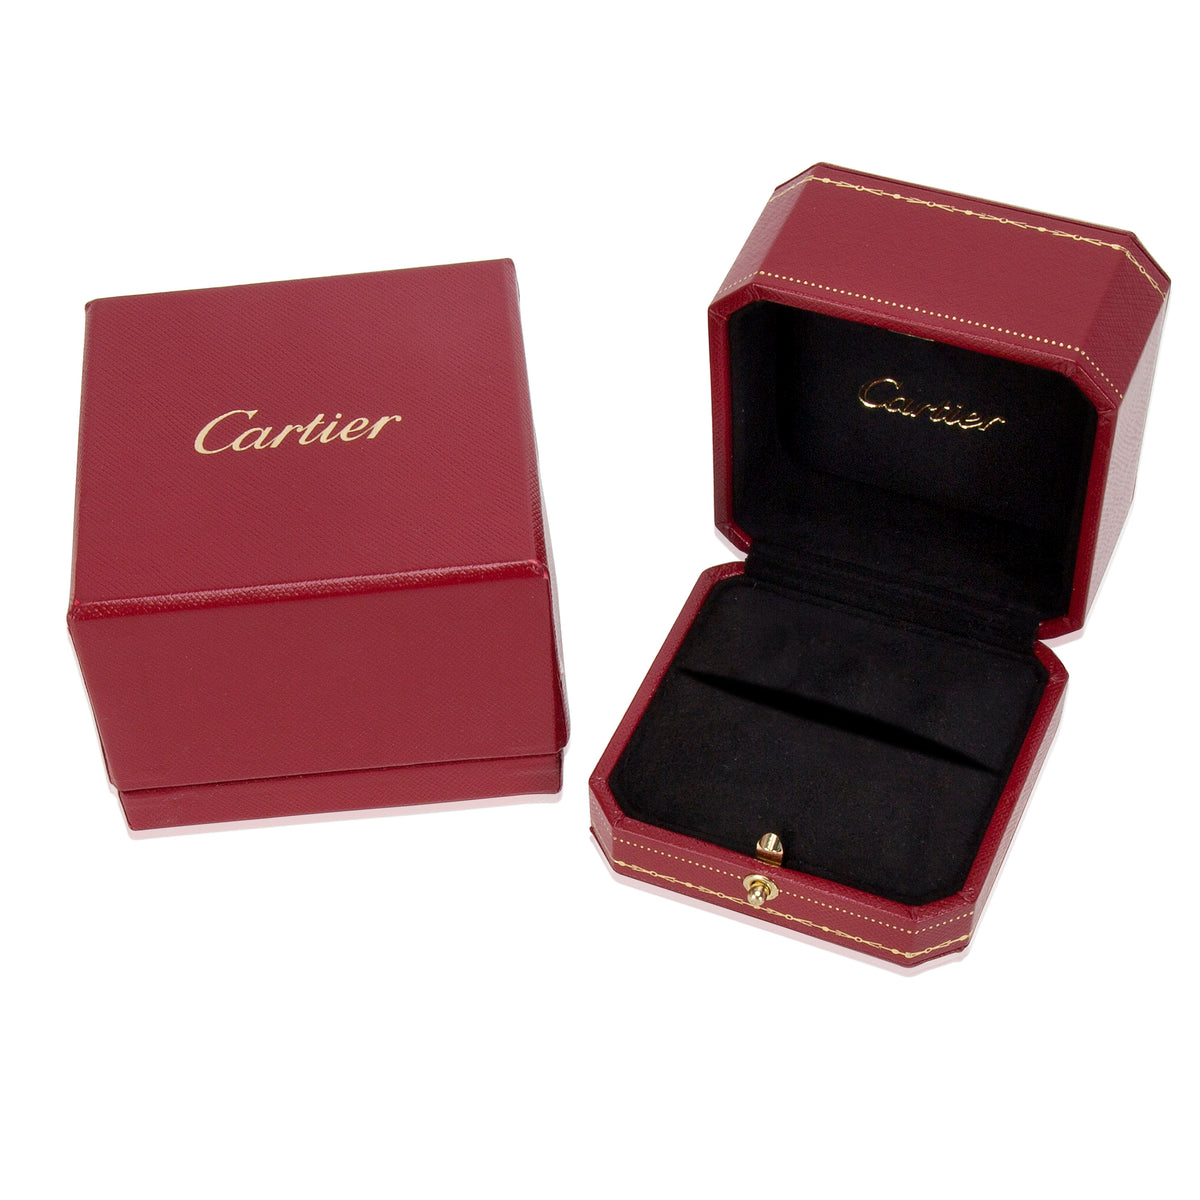 Cartier Emerald Cut Engagement Ring in Platinum (0.55 CTW)